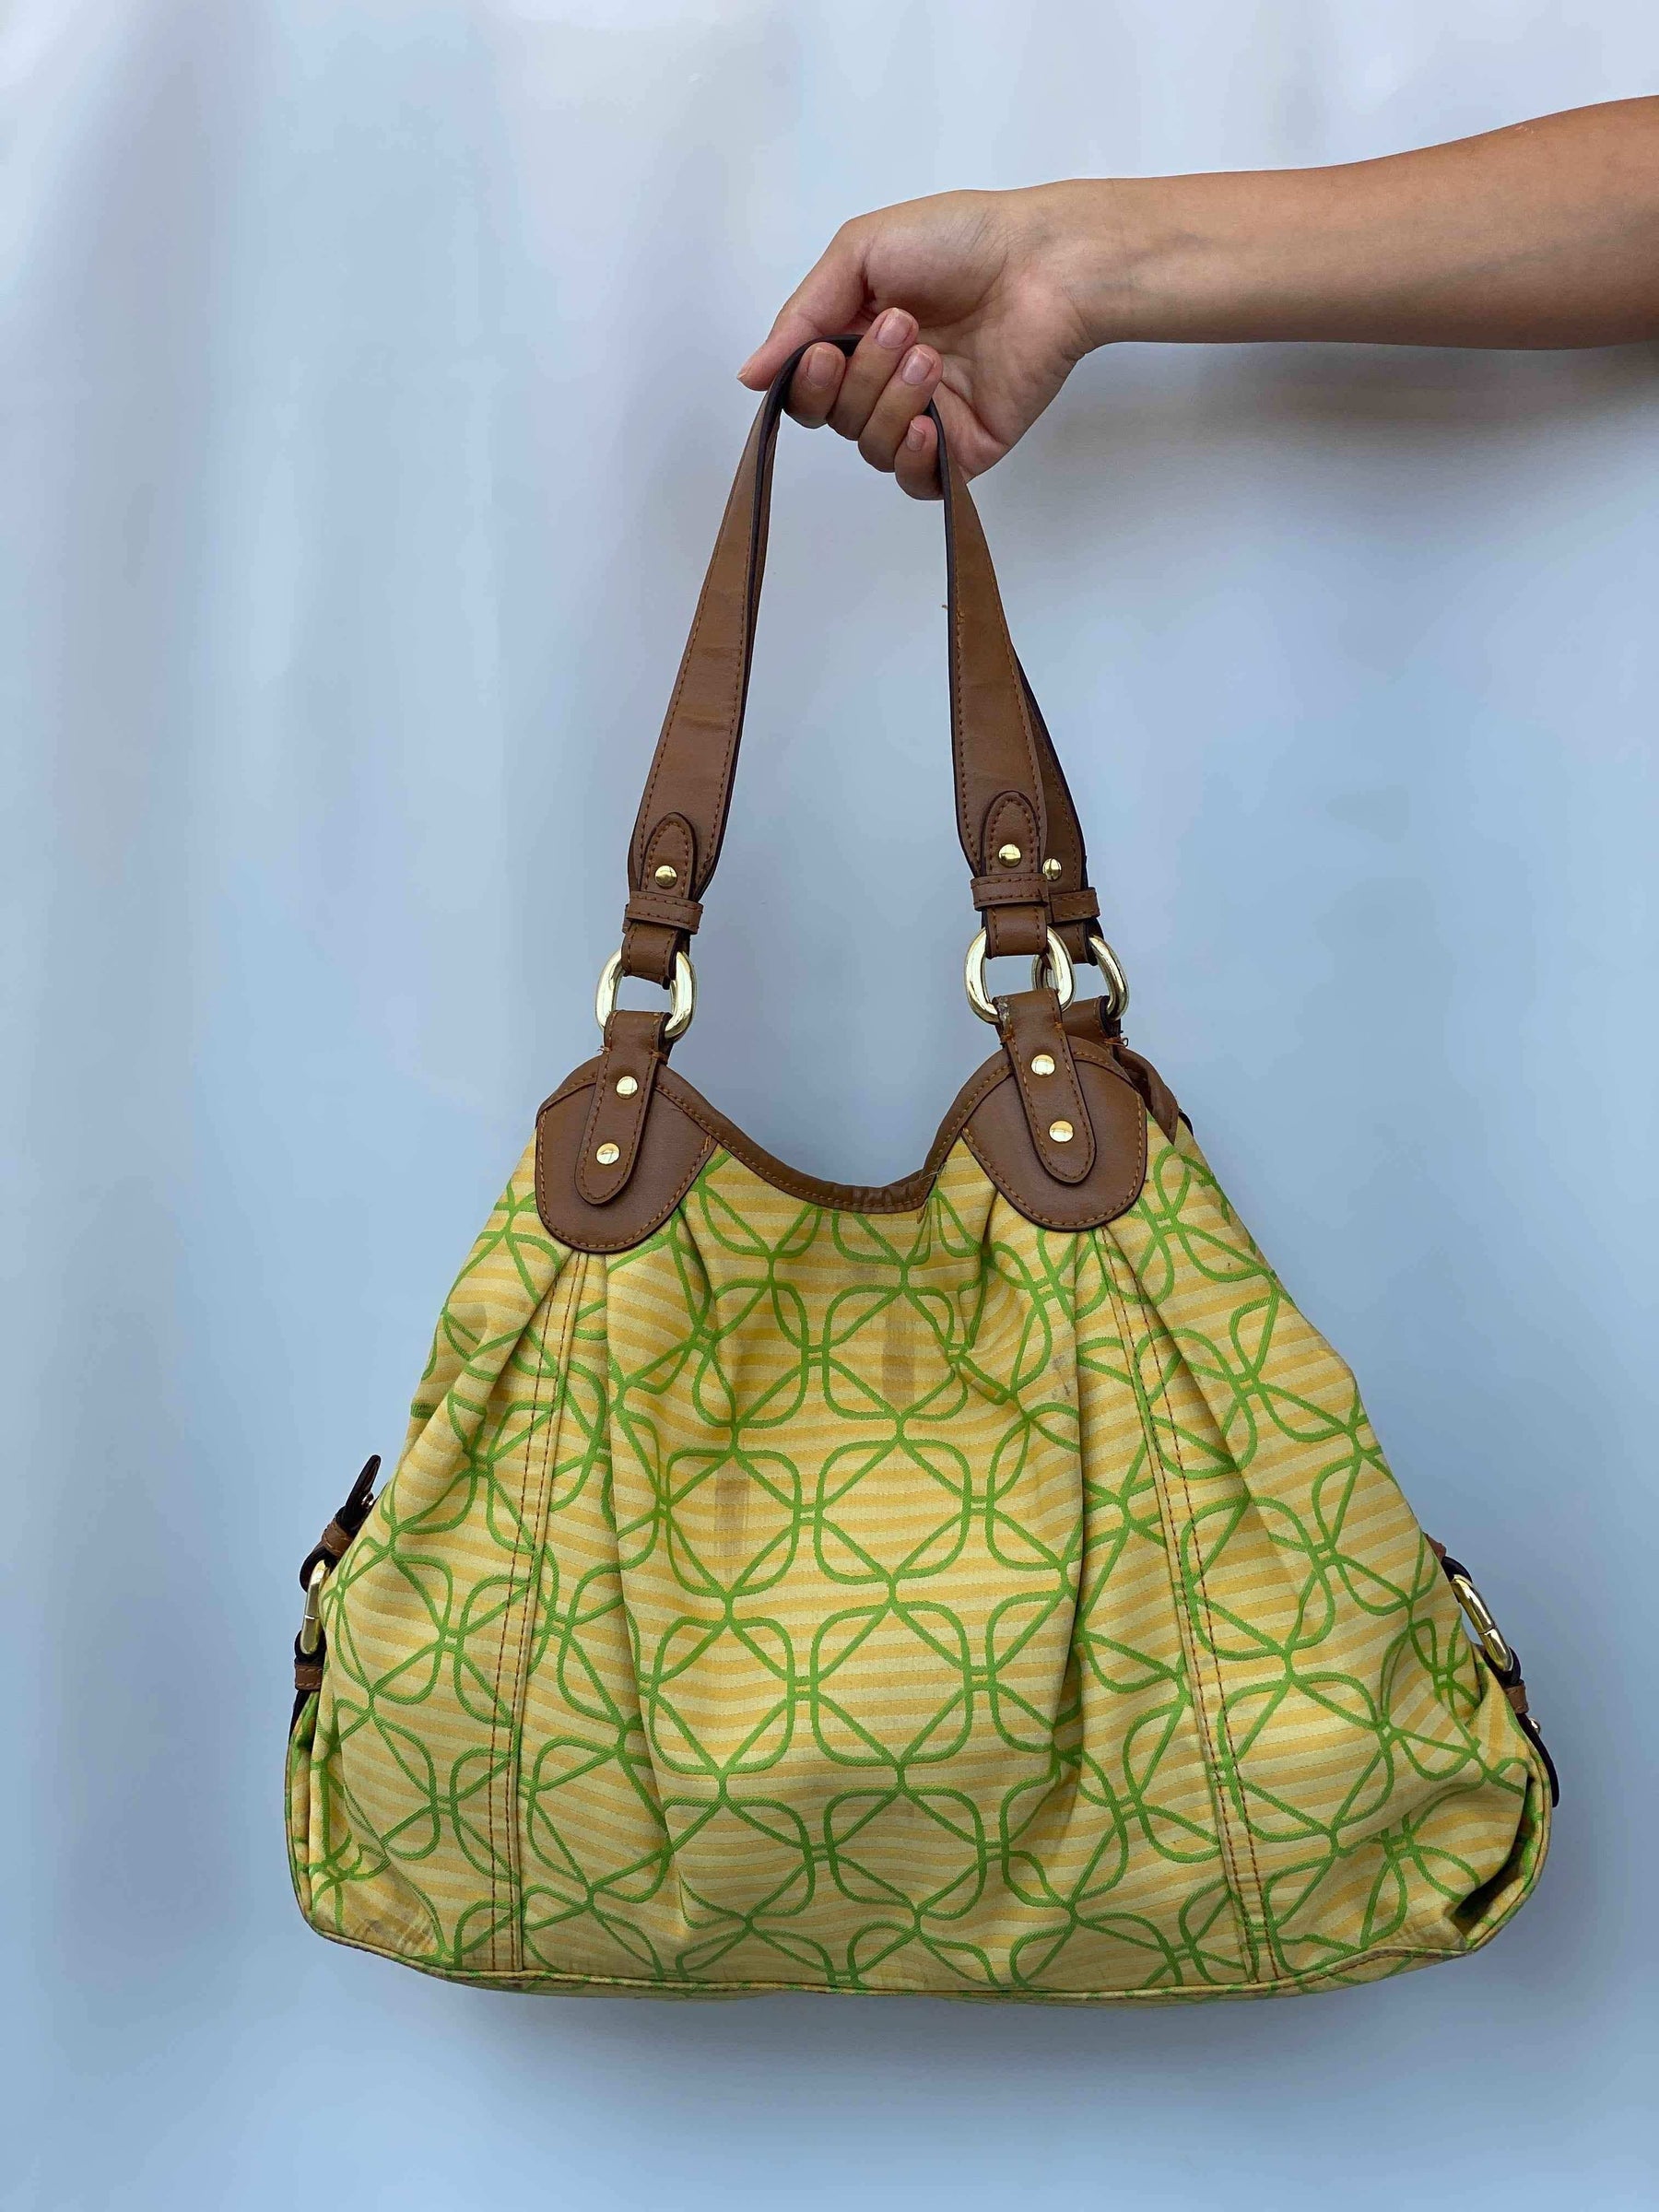 Small Hobo Bag Solid Color Denim Vintage Pattern Shoulder Bag